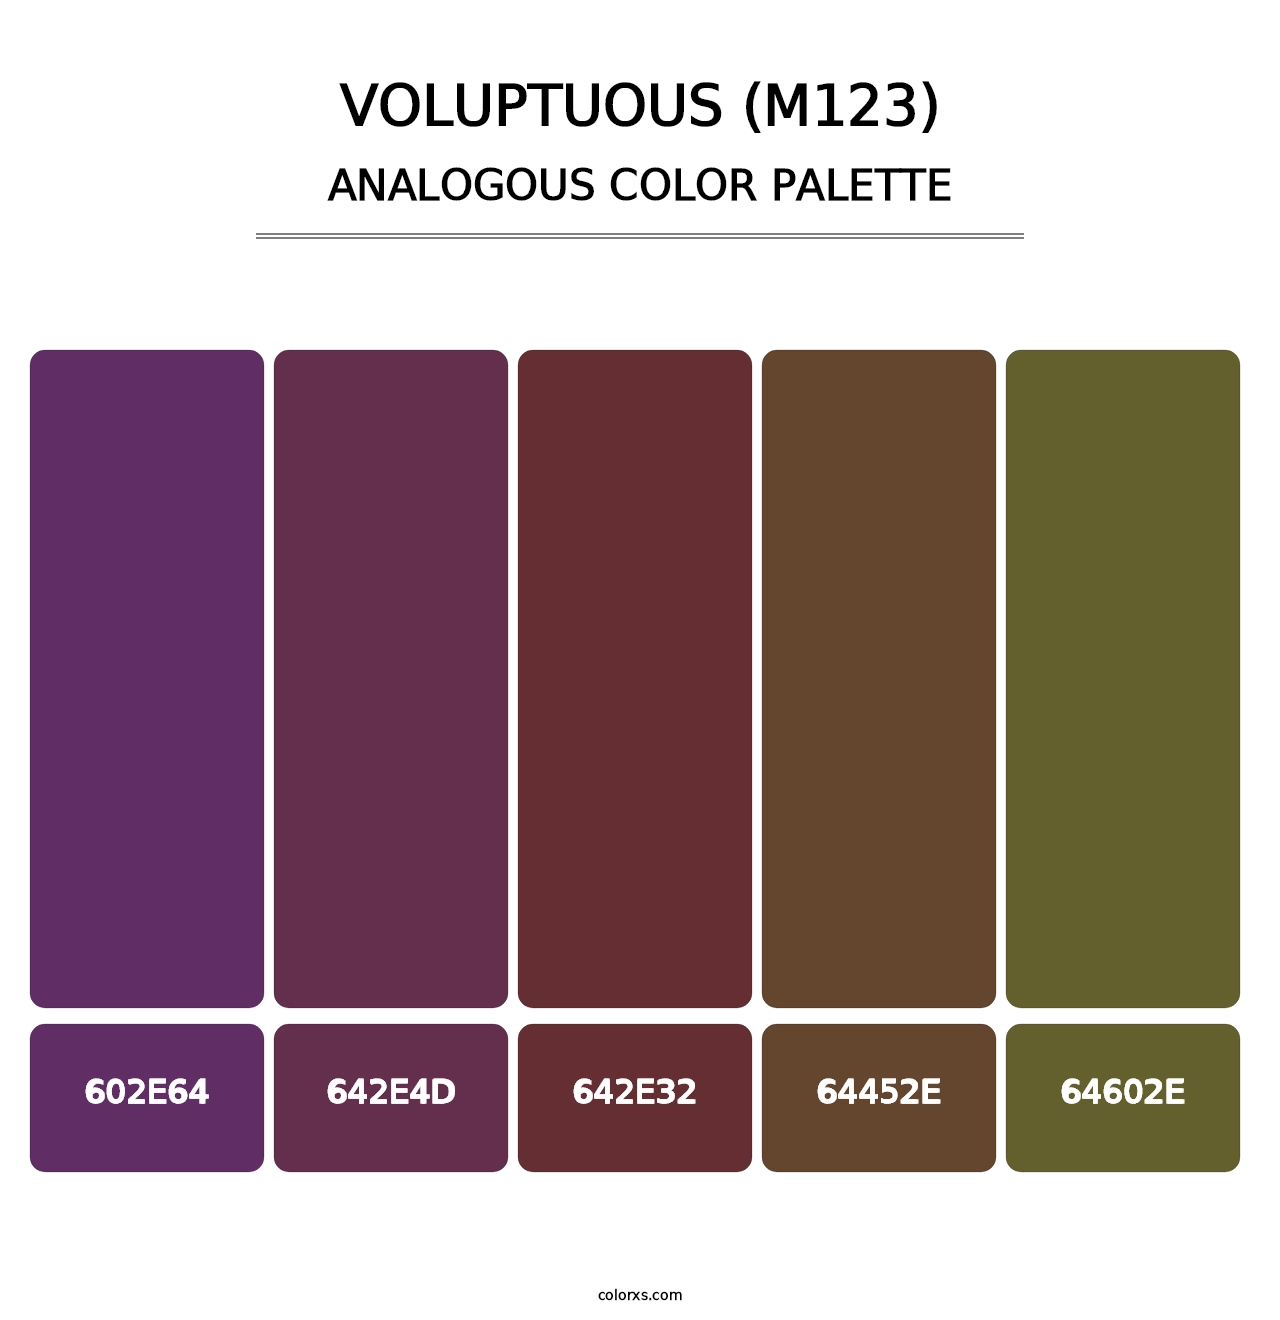 Voluptuous (M123) - Analogous Color Palette